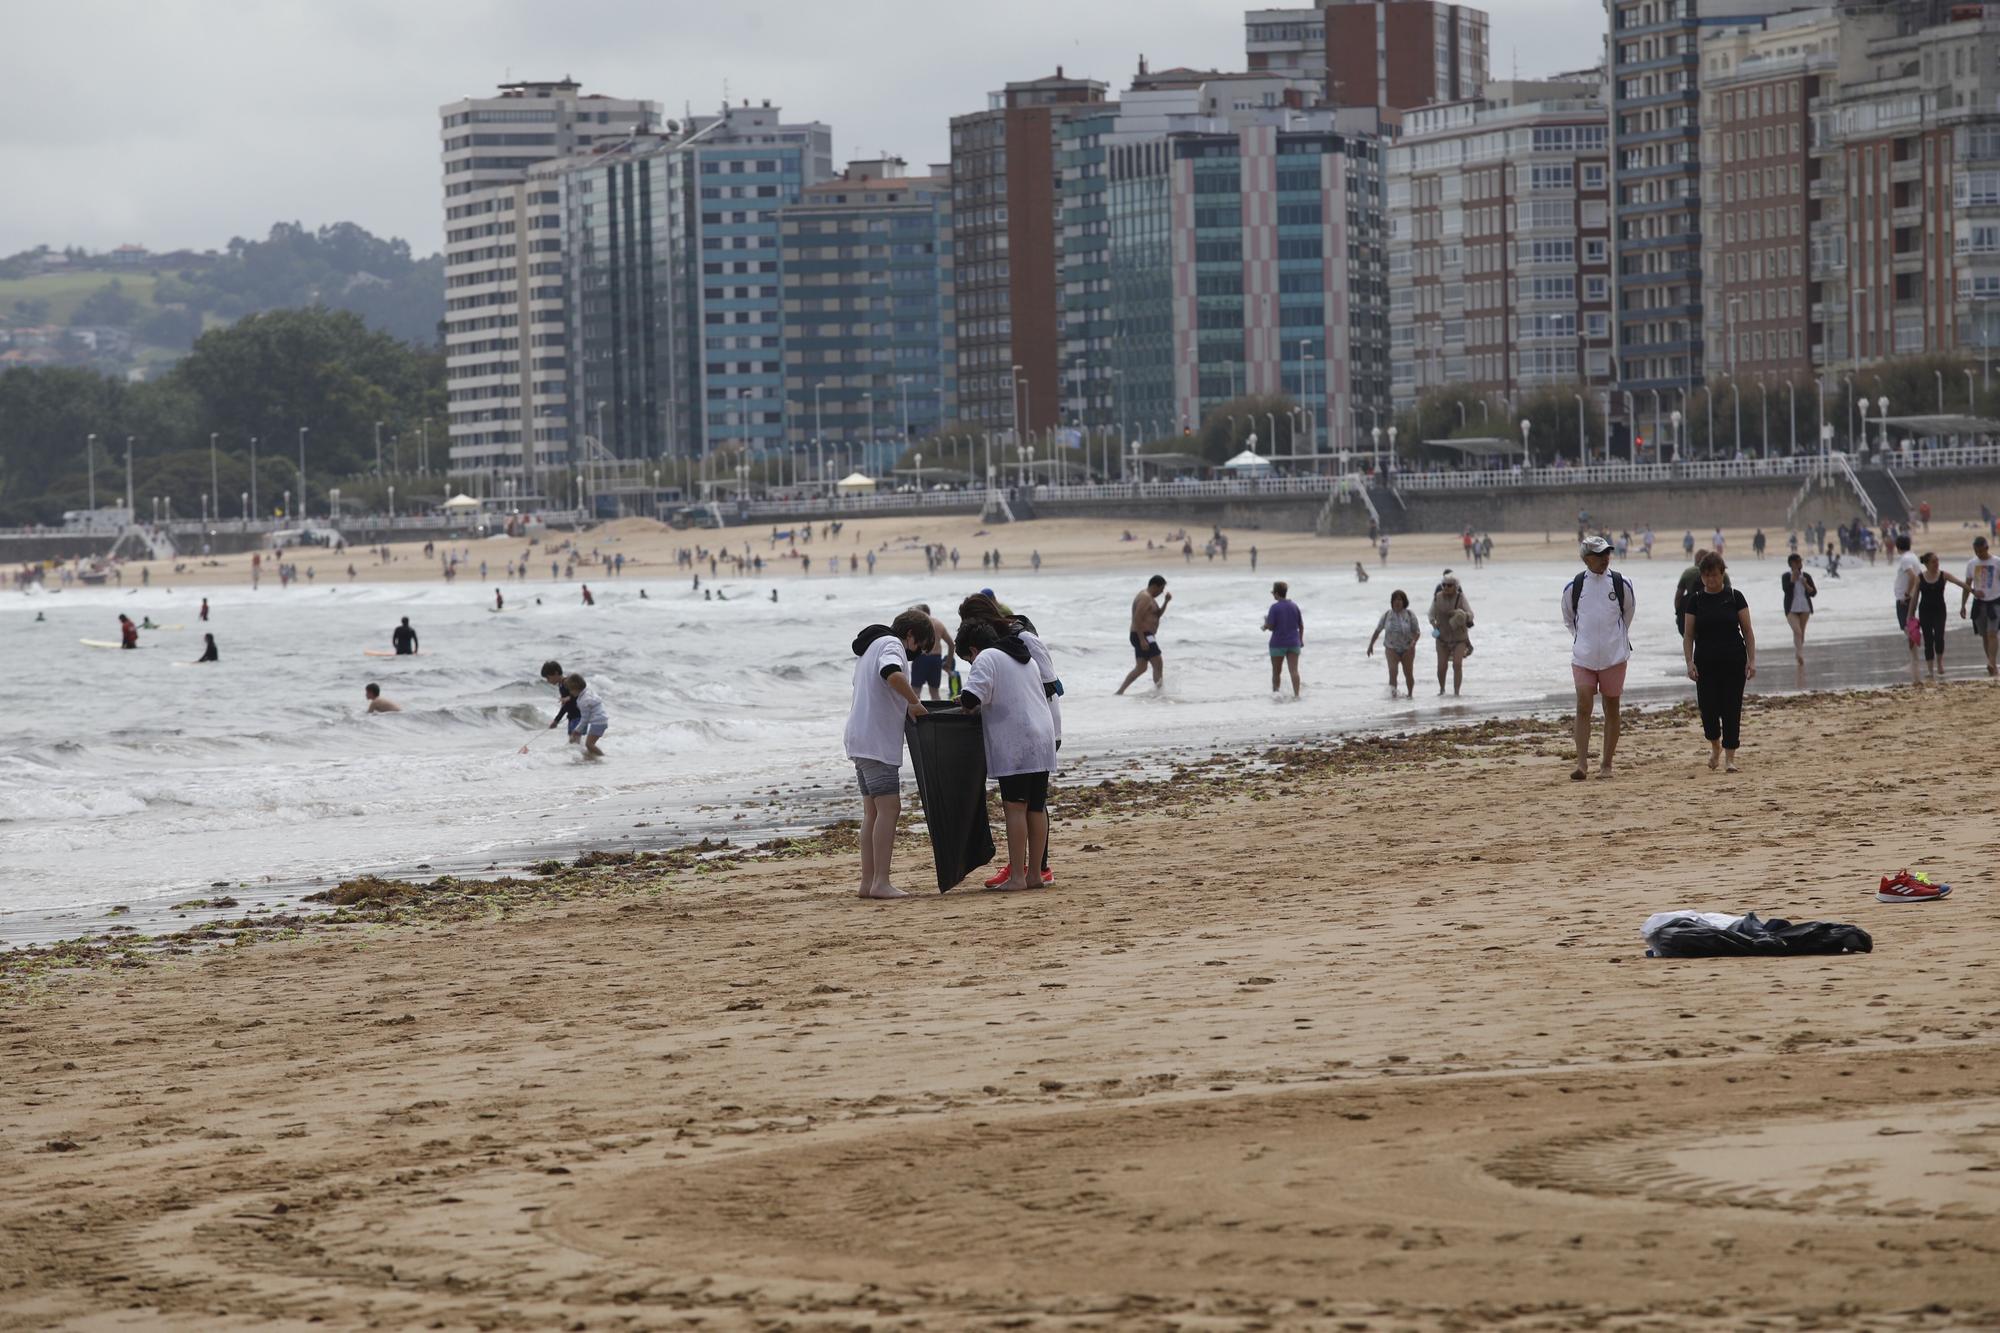 Recogida de plásticos en la playa de San Lorenzo